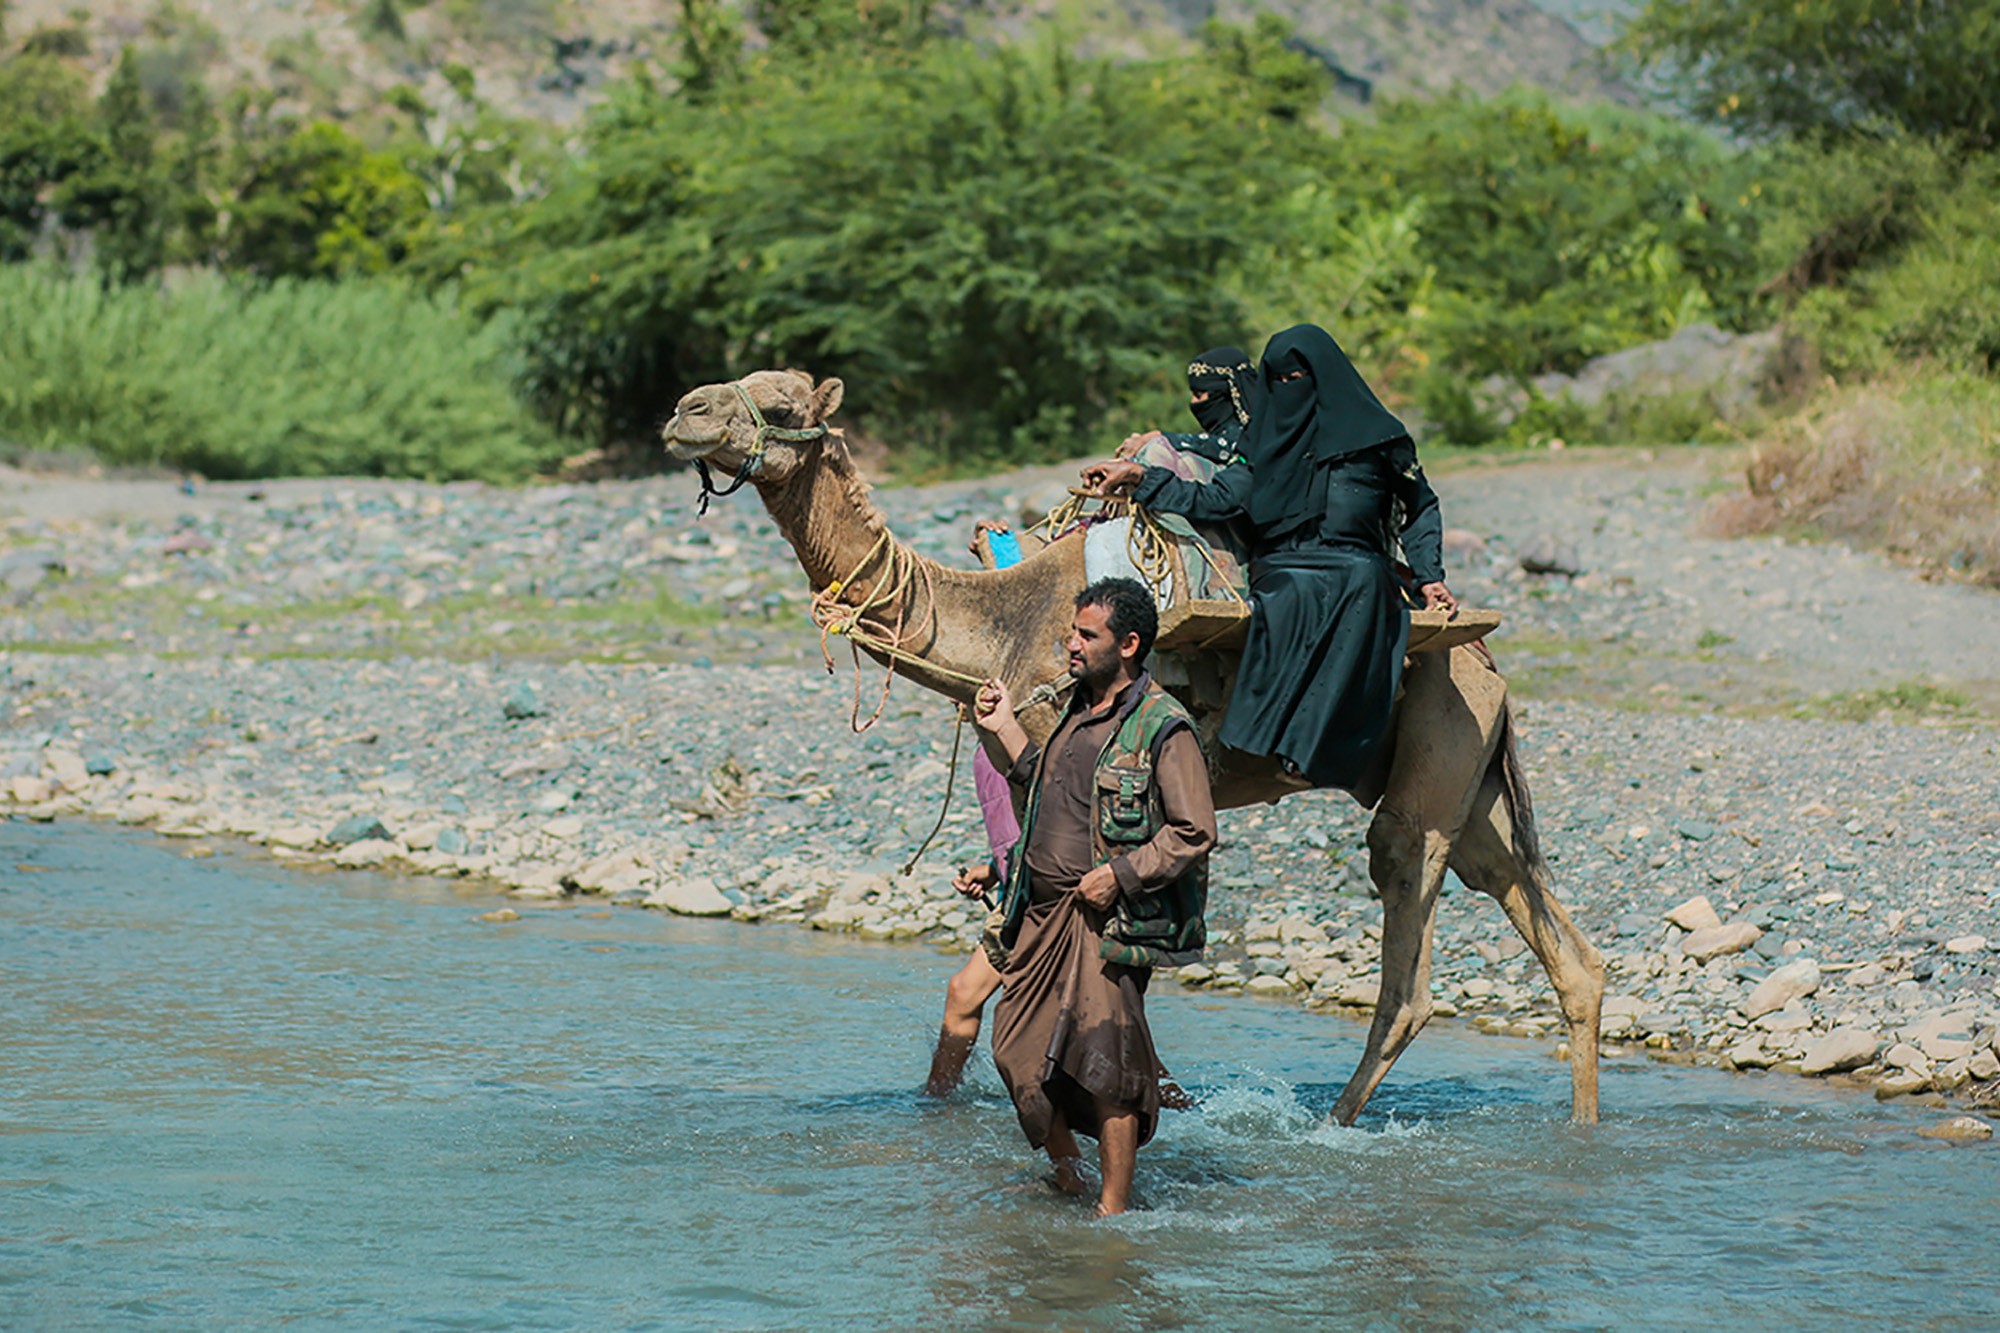 Une femme enceinte traverse une rivière sur un chameau tiré par un homme.